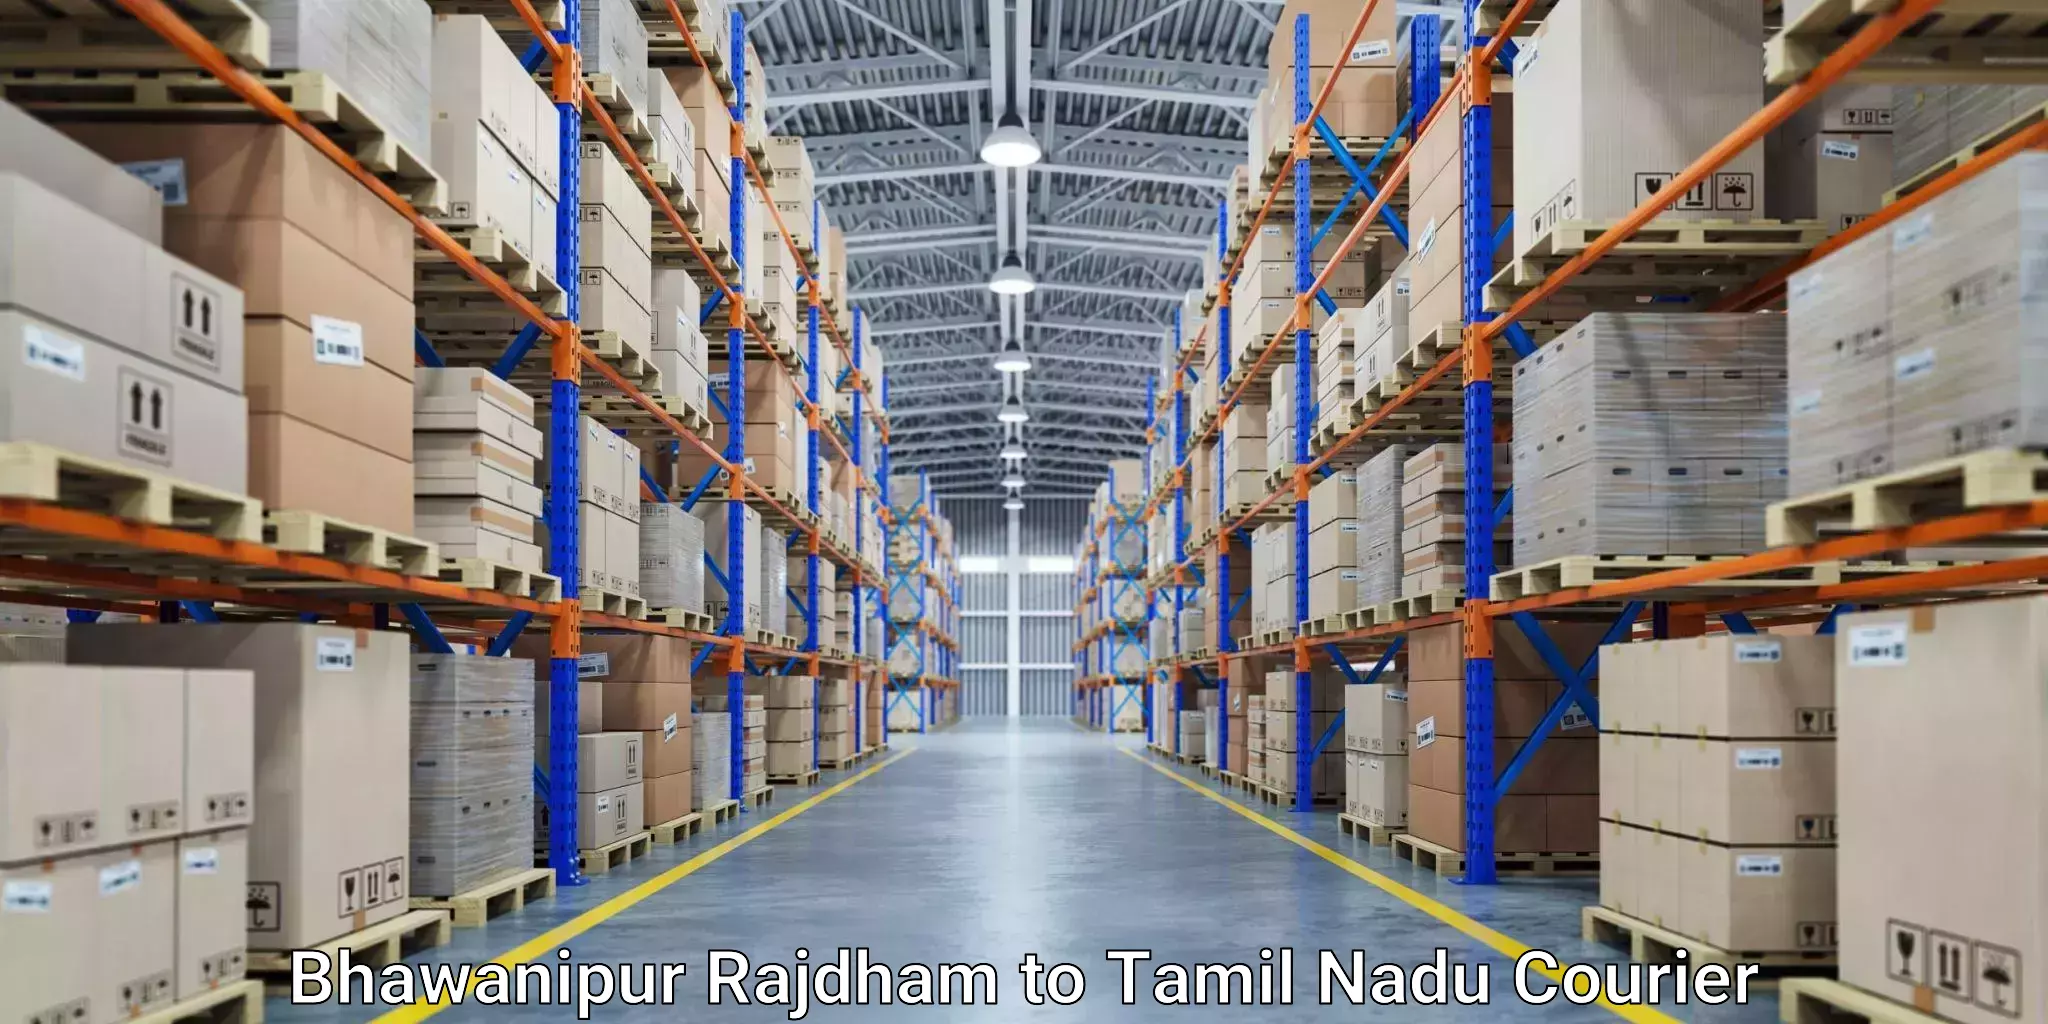 Express logistics providers Bhawanipur Rajdham to Tamil Nadu